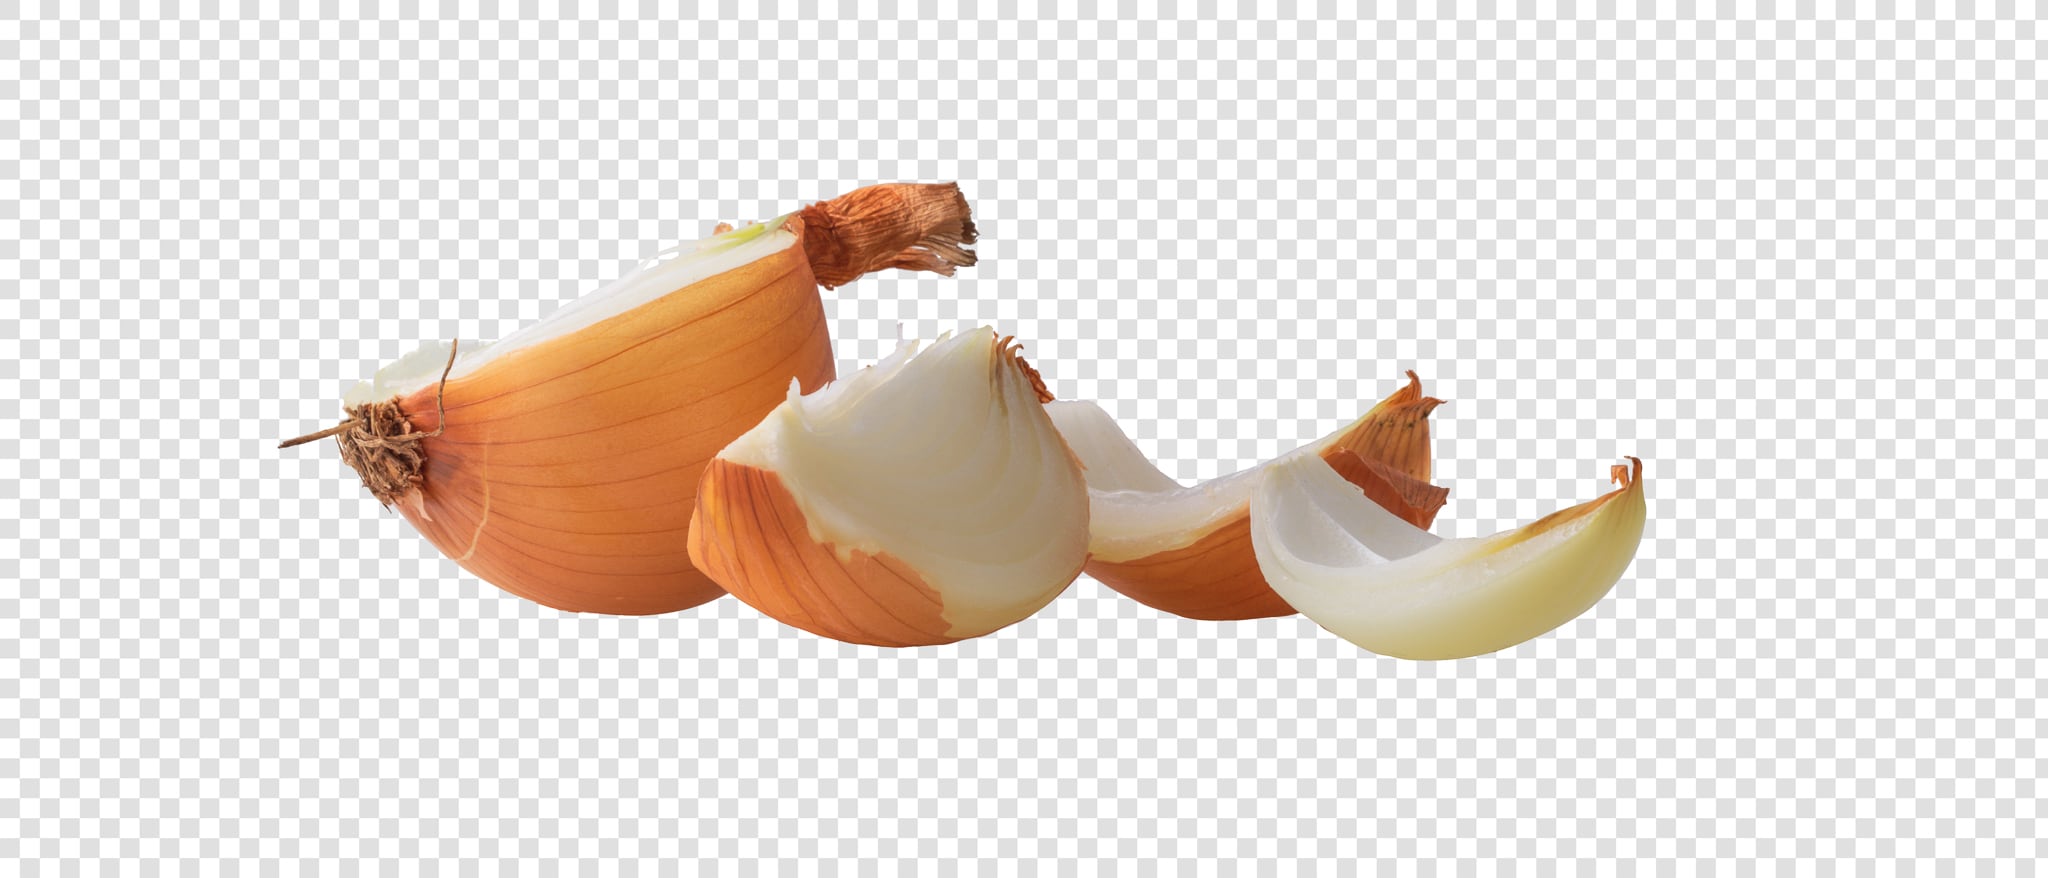 Onion PSD layered image